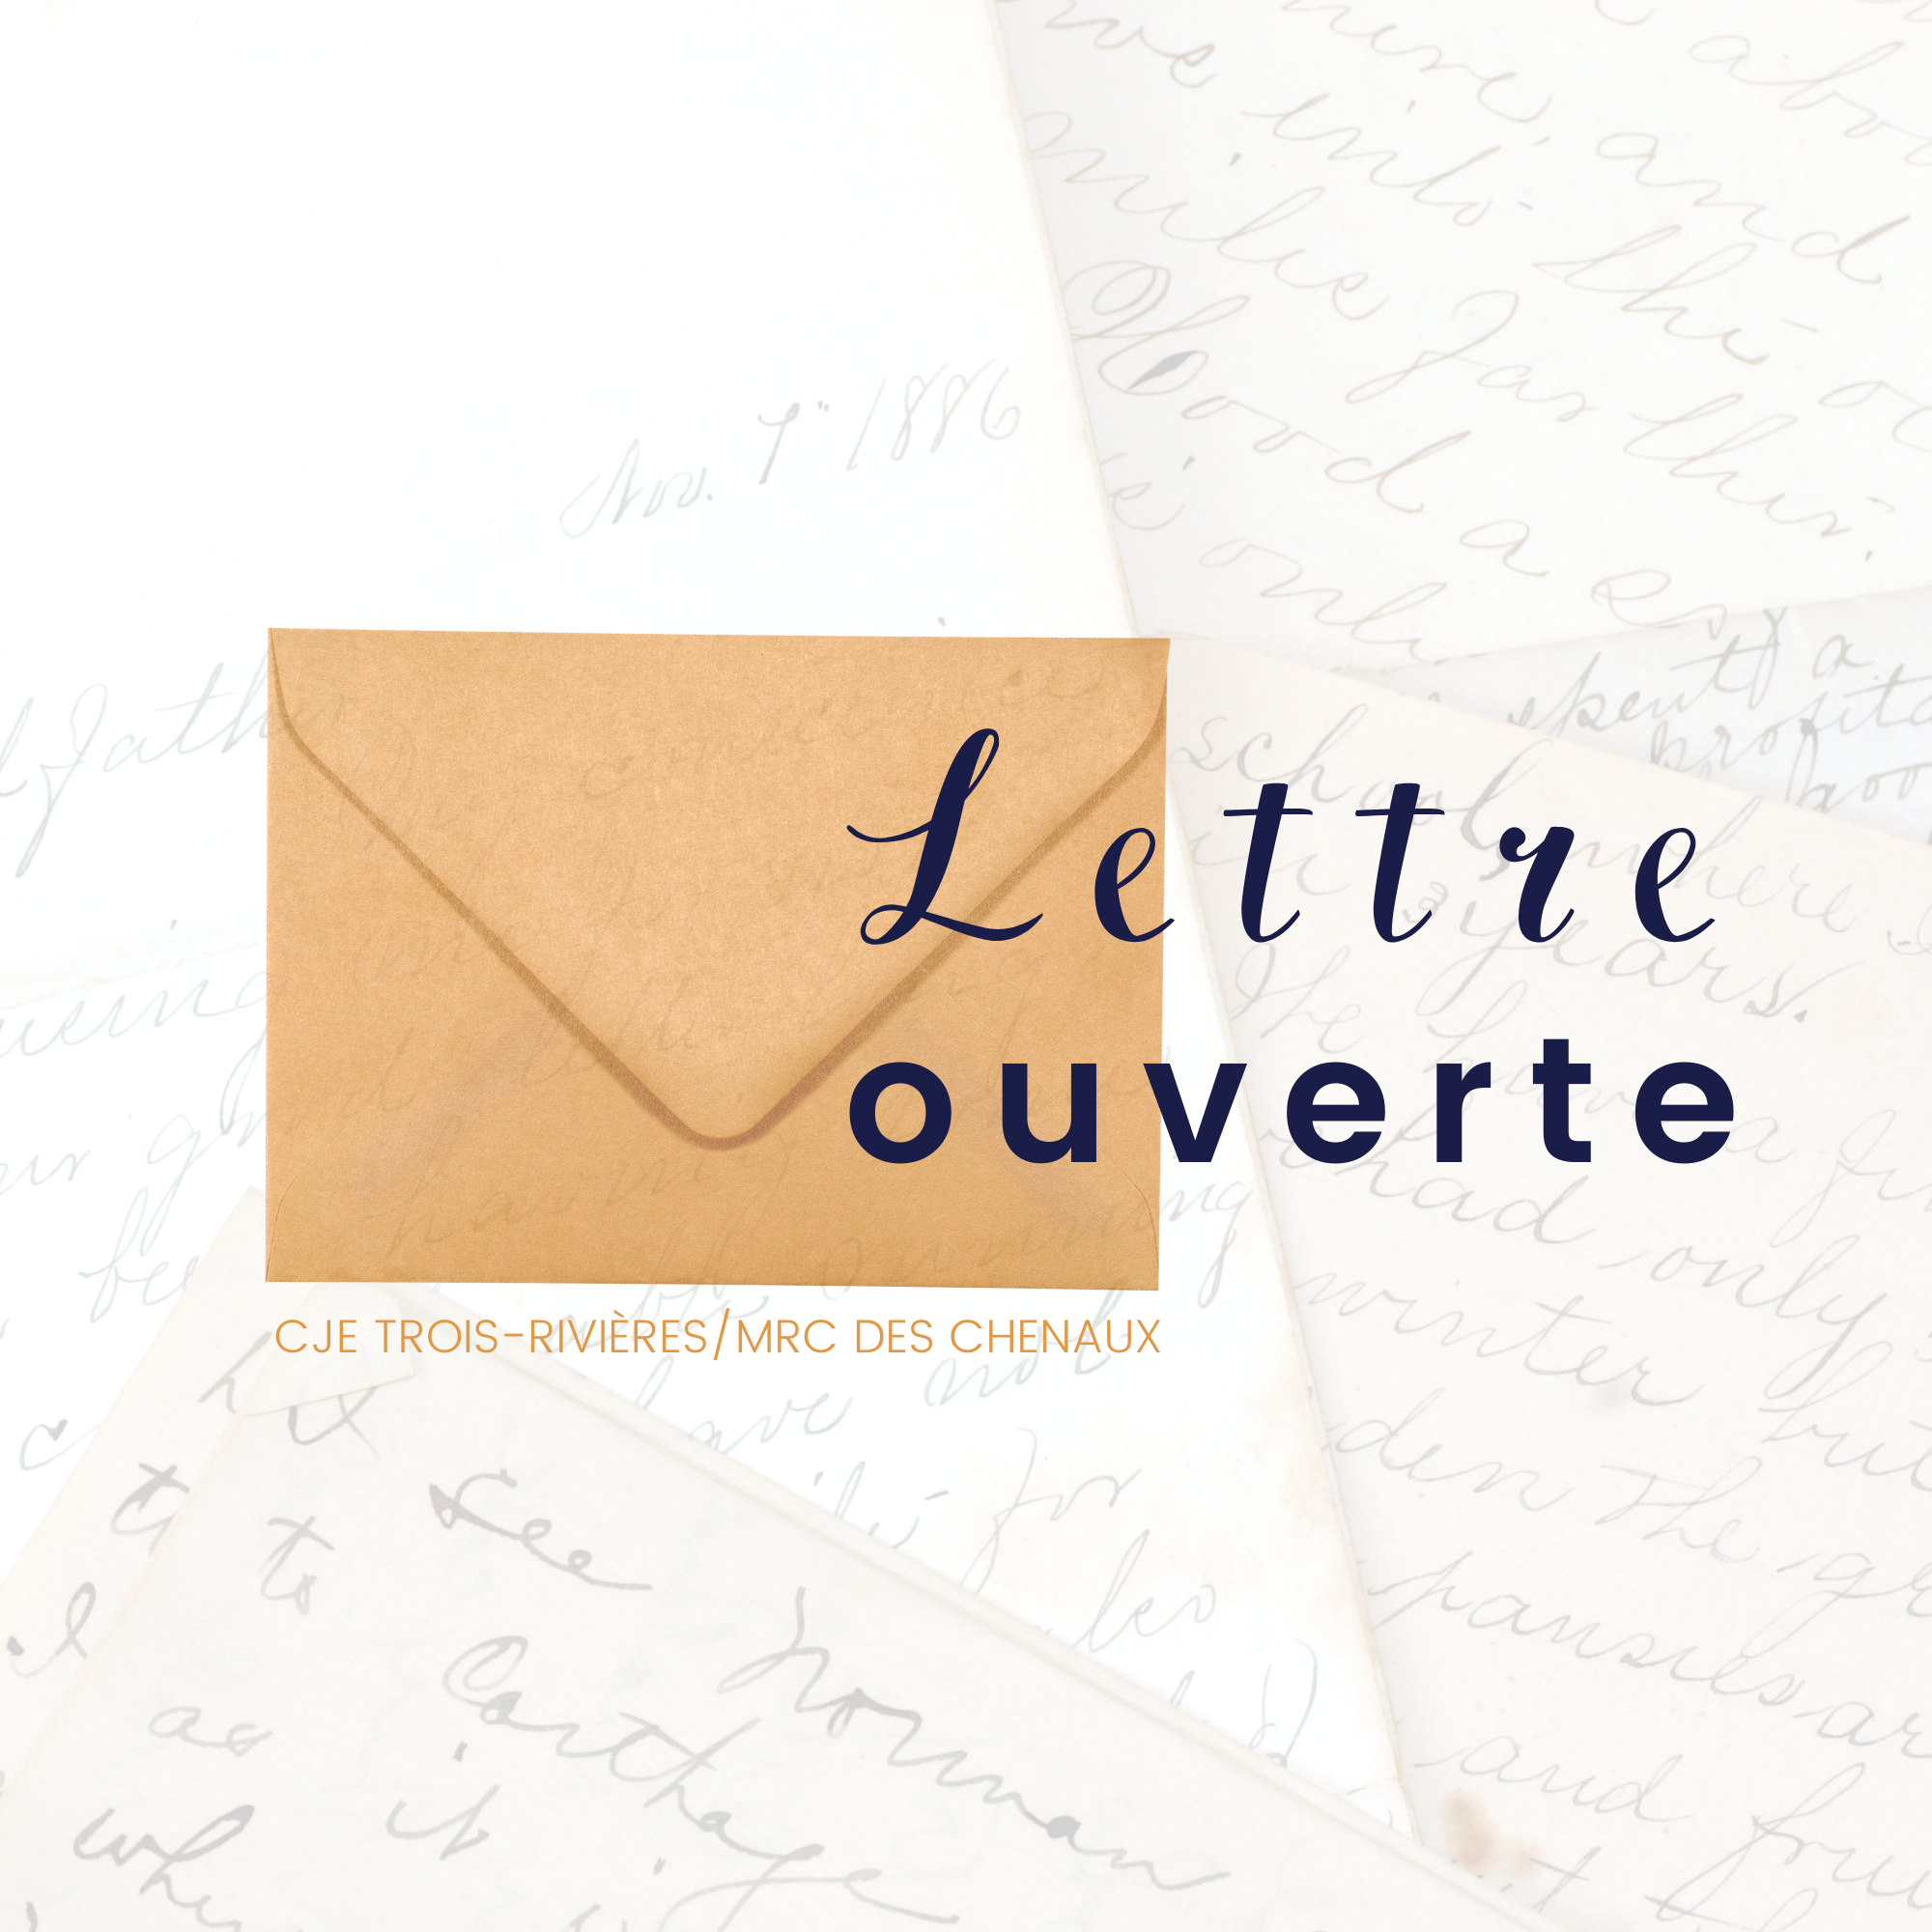 lettre ouverte logo